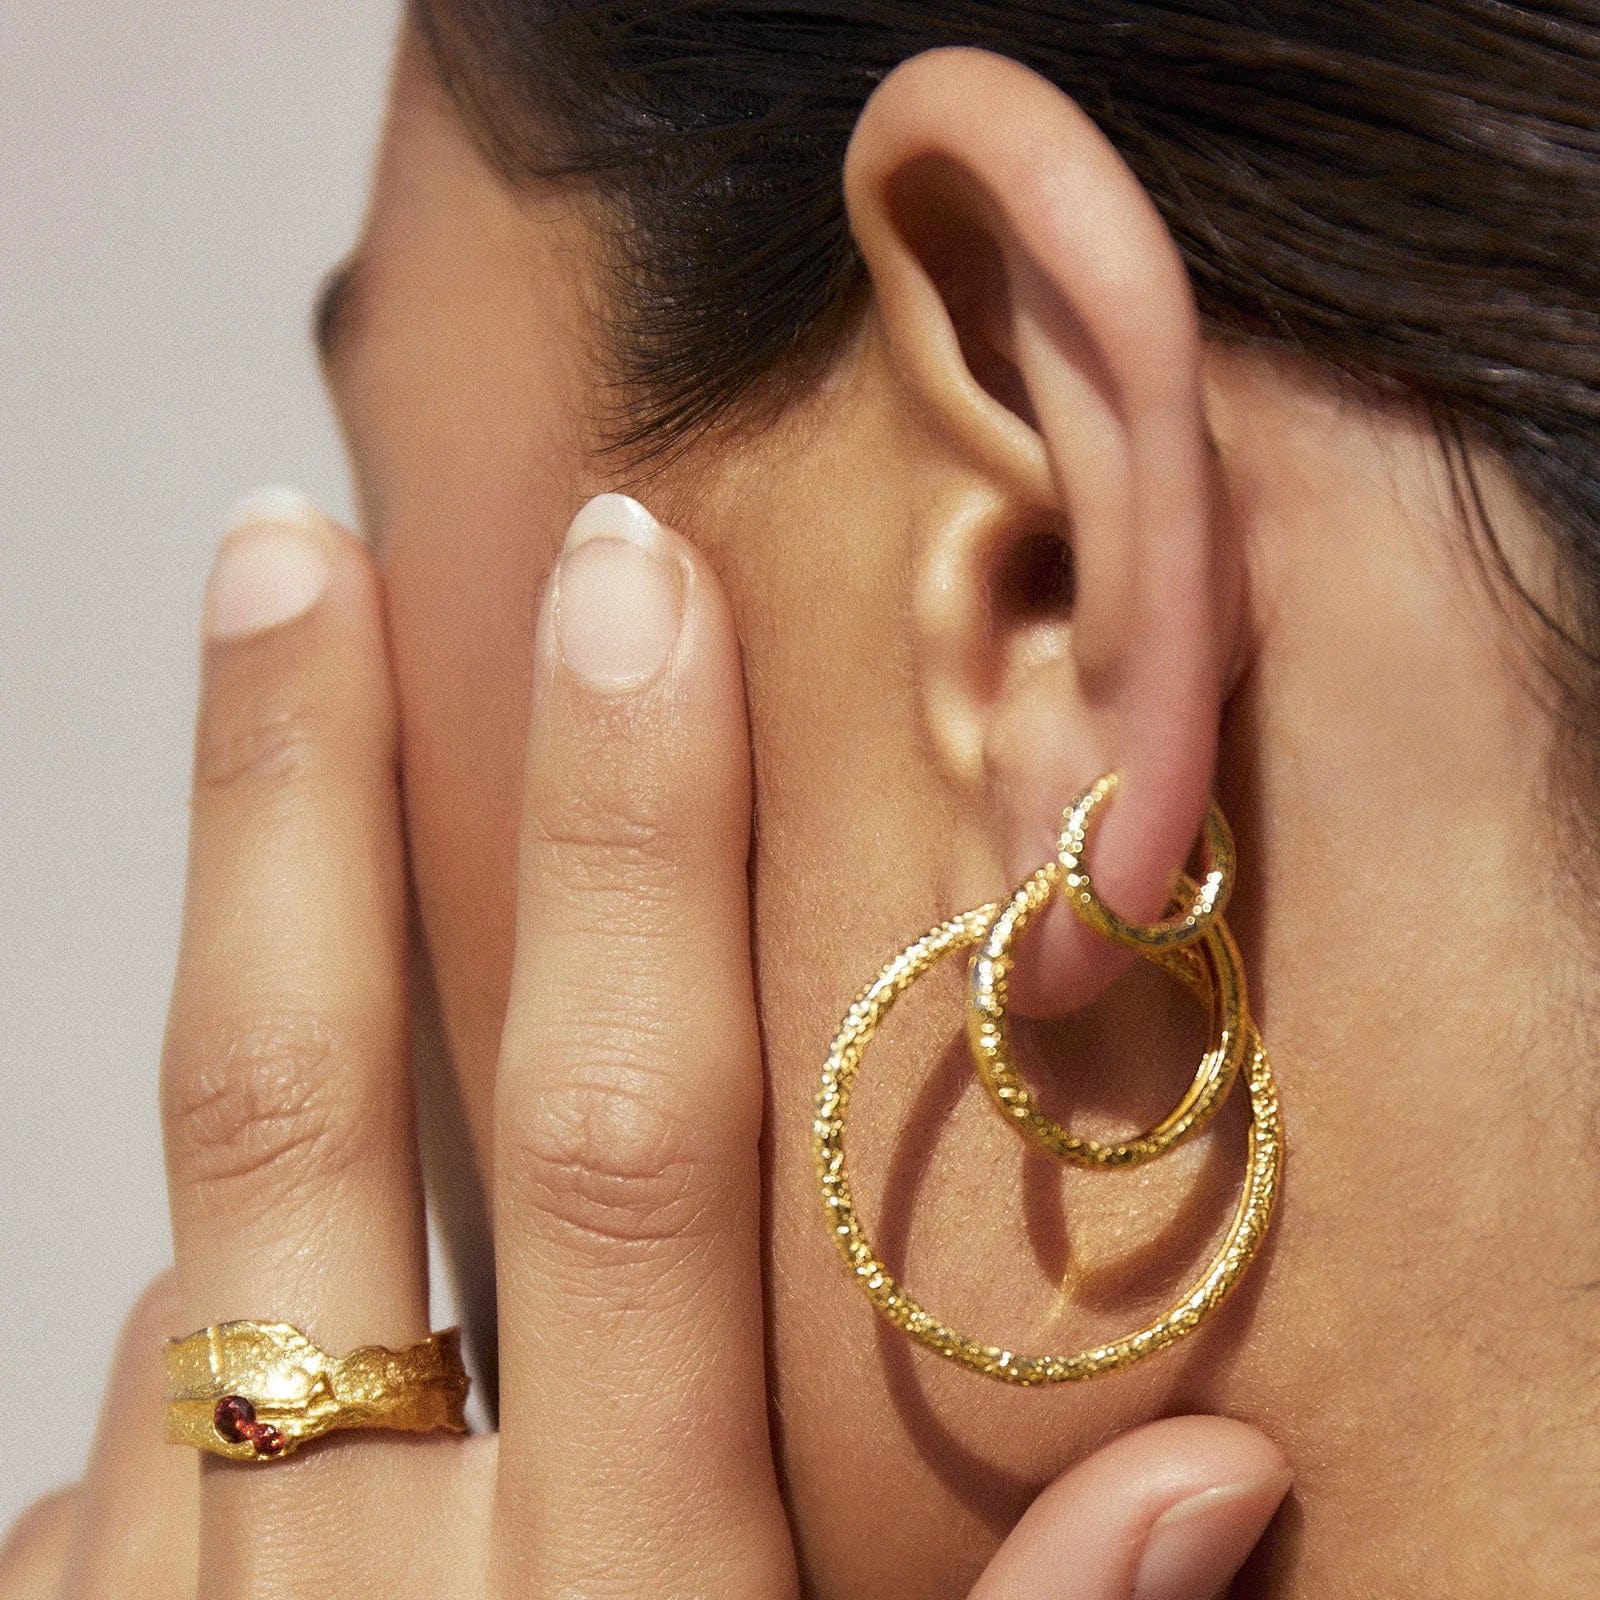 Arms Of Eve Earrings Arms Of Eve | Arabella Gold Hoop Earrings